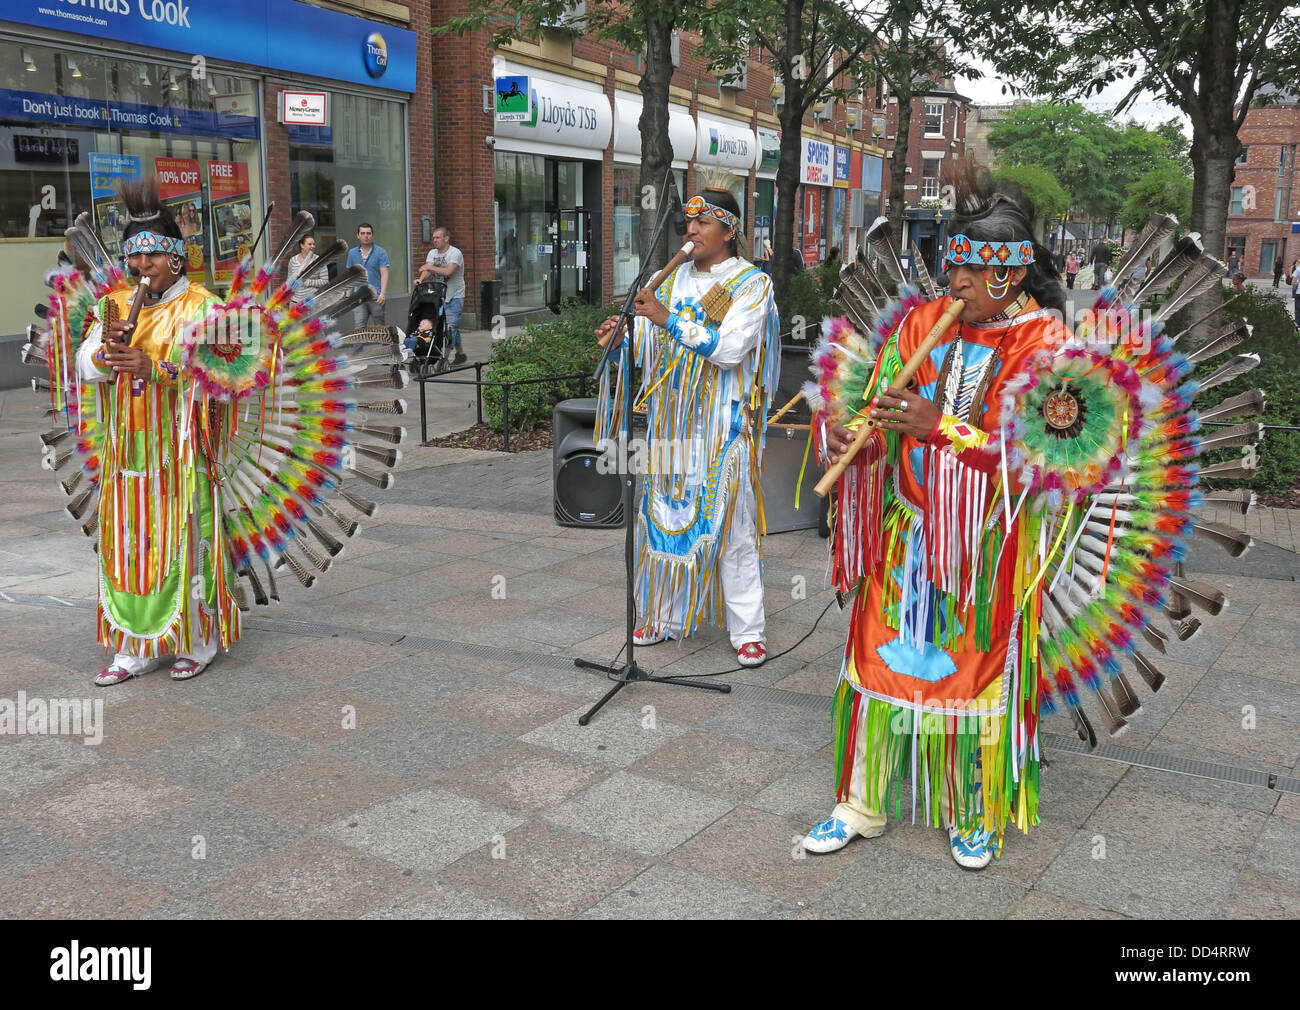 Sud peruviano American buskers / animatori nel centro citta' di Warrington, Cheshire , Inghilterra , REGNO UNITO Foto Stock